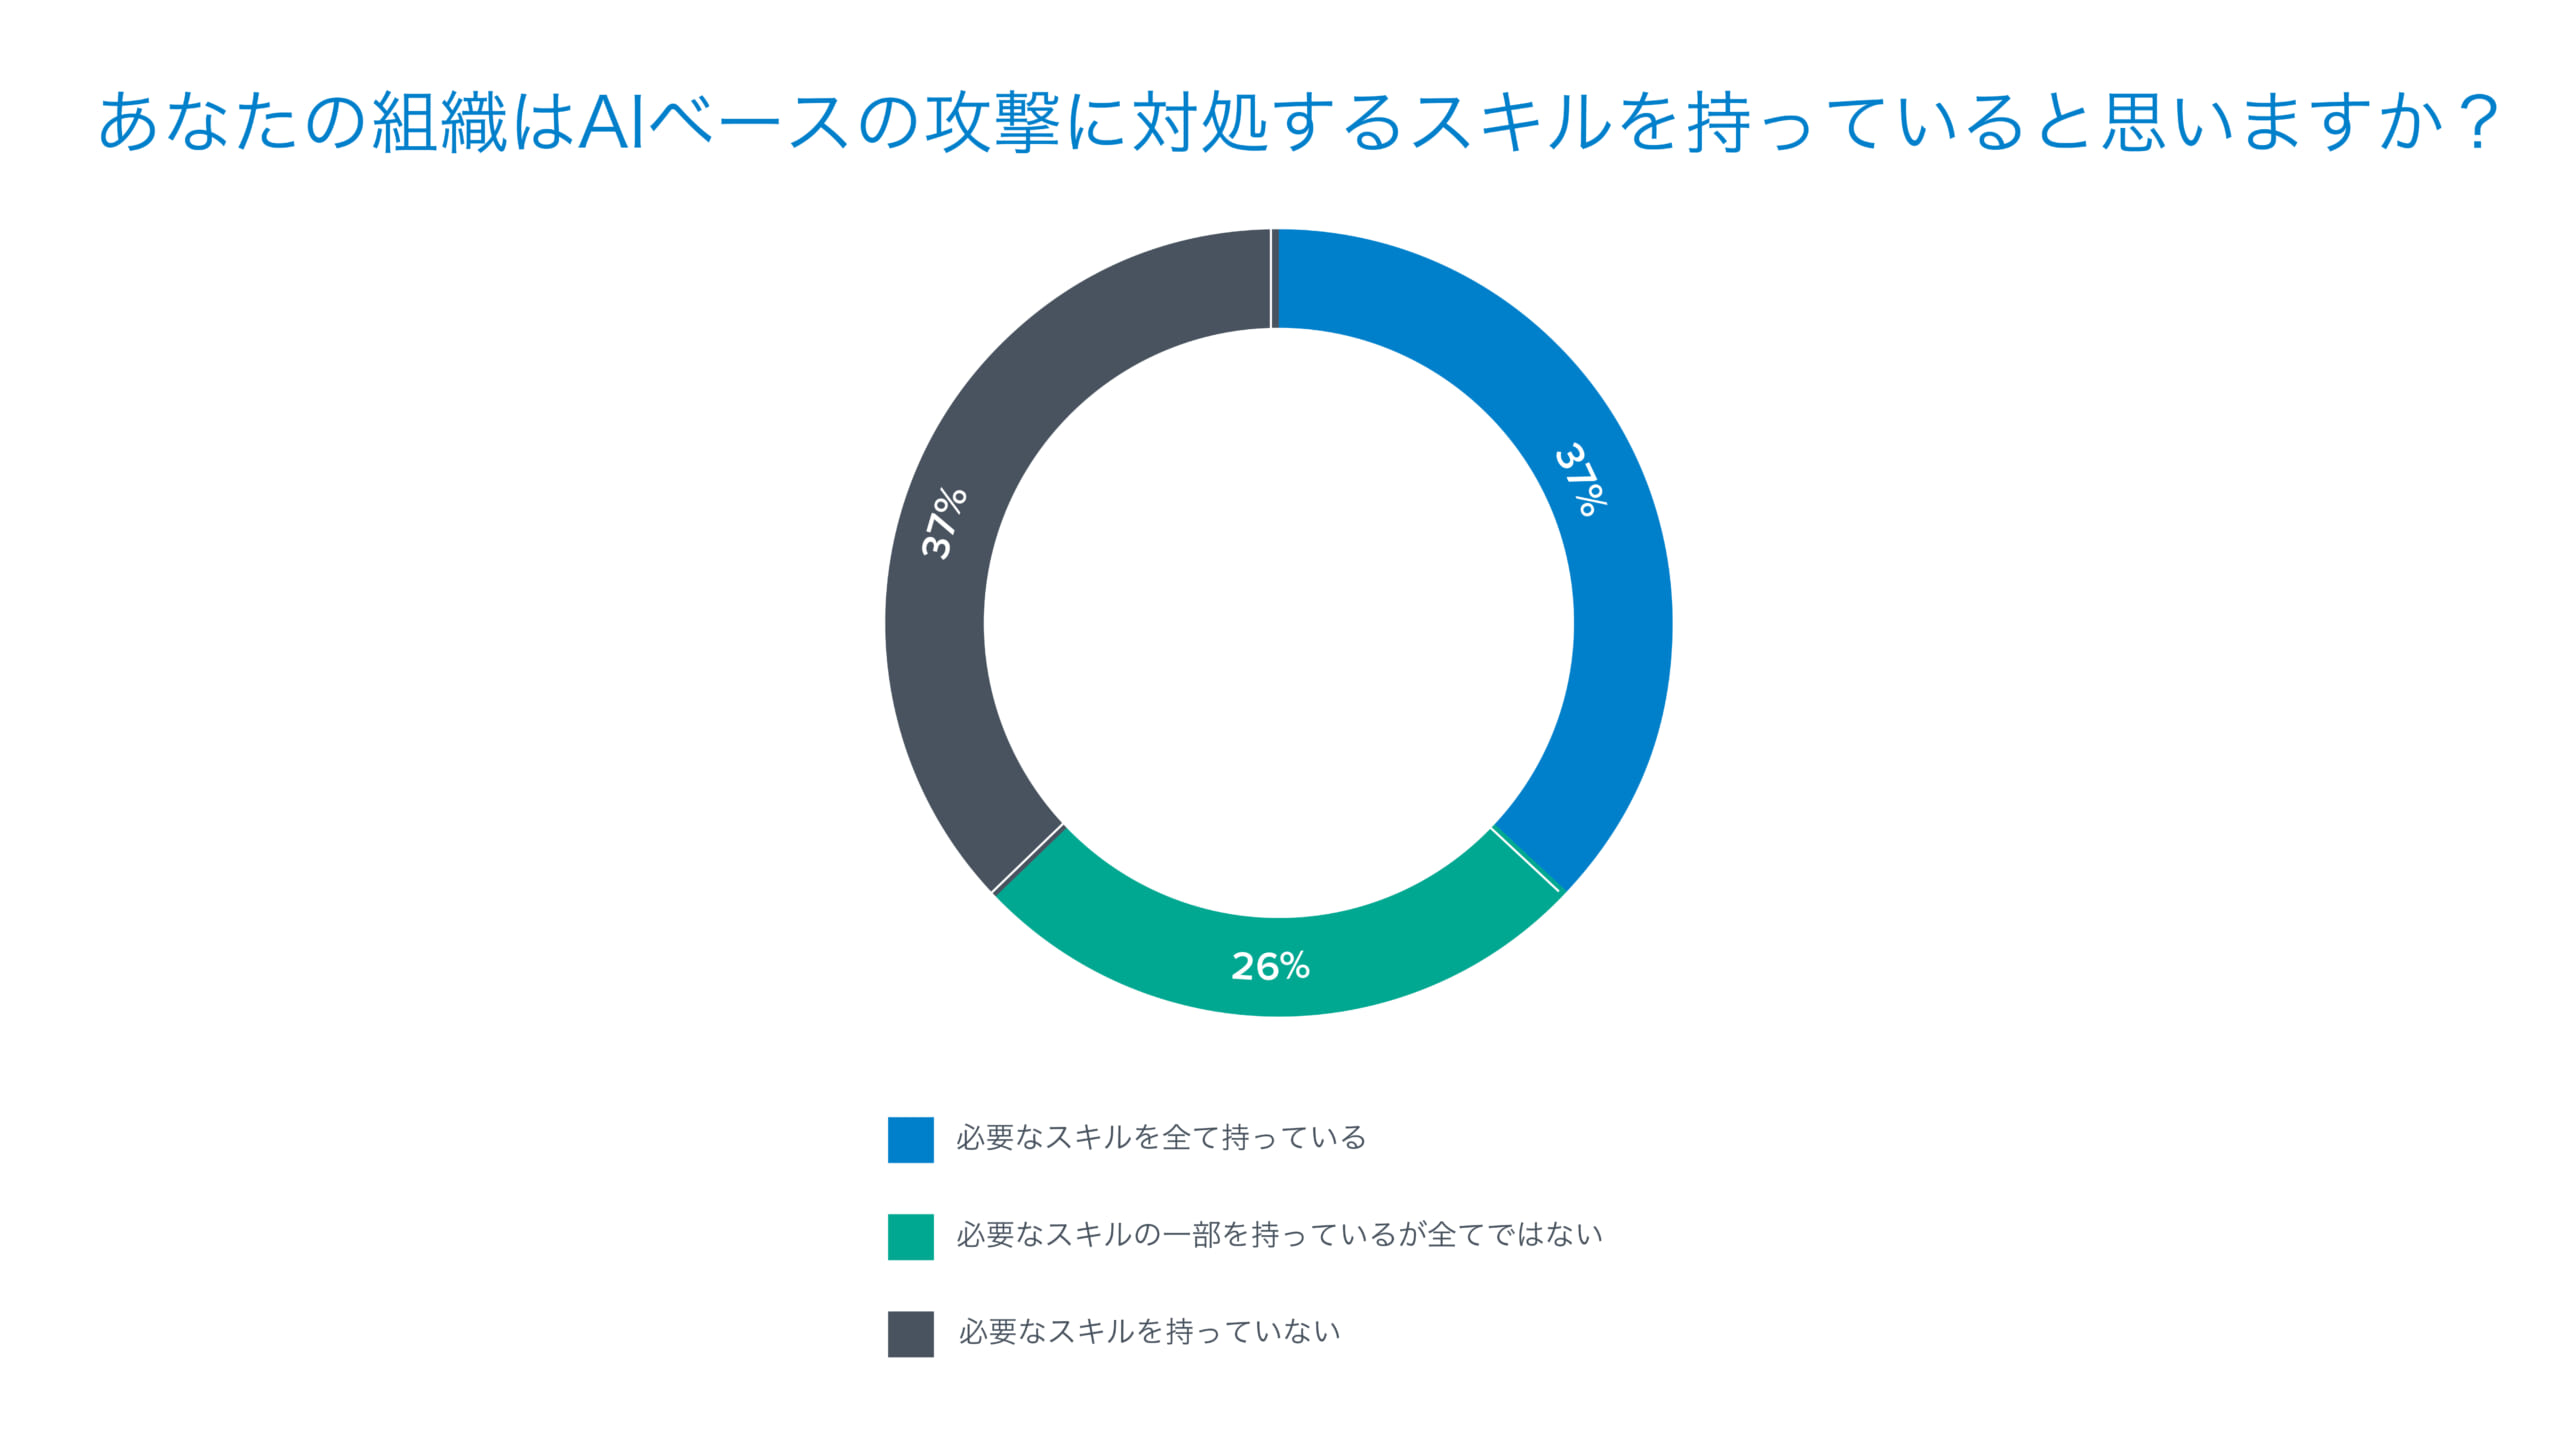 日本の中小企業はAIに前向きだが、セキュリティや知識、スキルの乖離を懸念 ―  バラクーダ、日本国内中小企業のAIとセキュリティに関する調査結果を発表 のページ写真 2